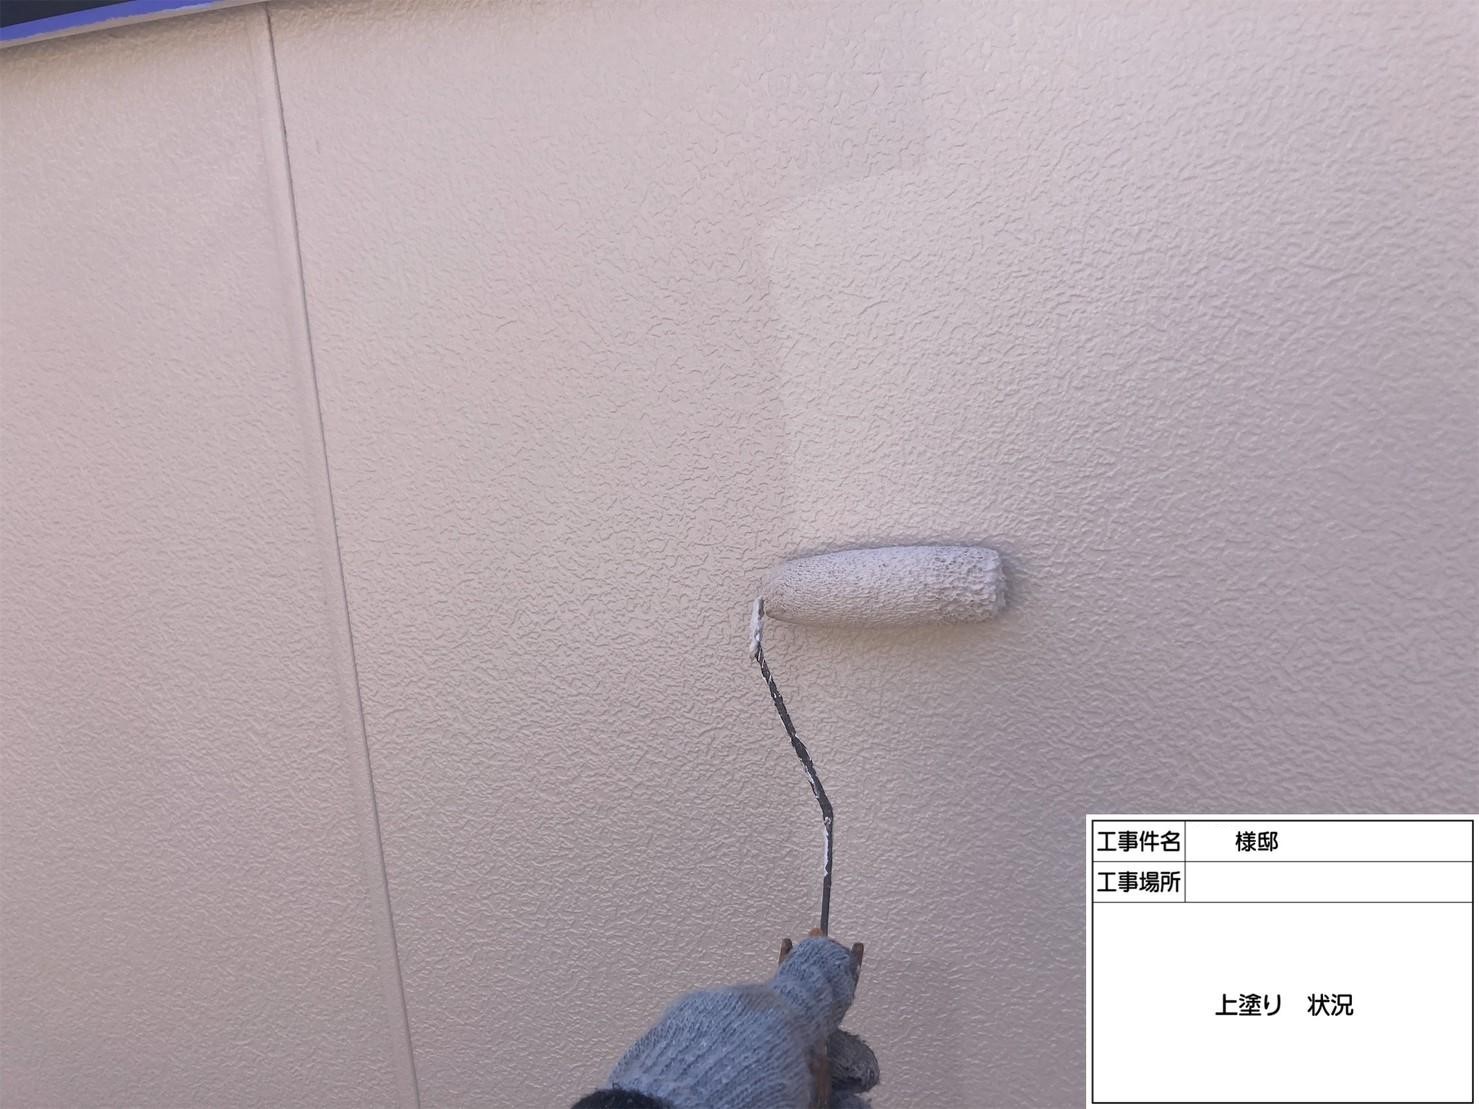 福岡県福岡市東区高美台のO様邸で新築時の輝きを取り戻すように外壁塗装と屋根塗装工事を行いました。4/29完成です。【ホームページより】